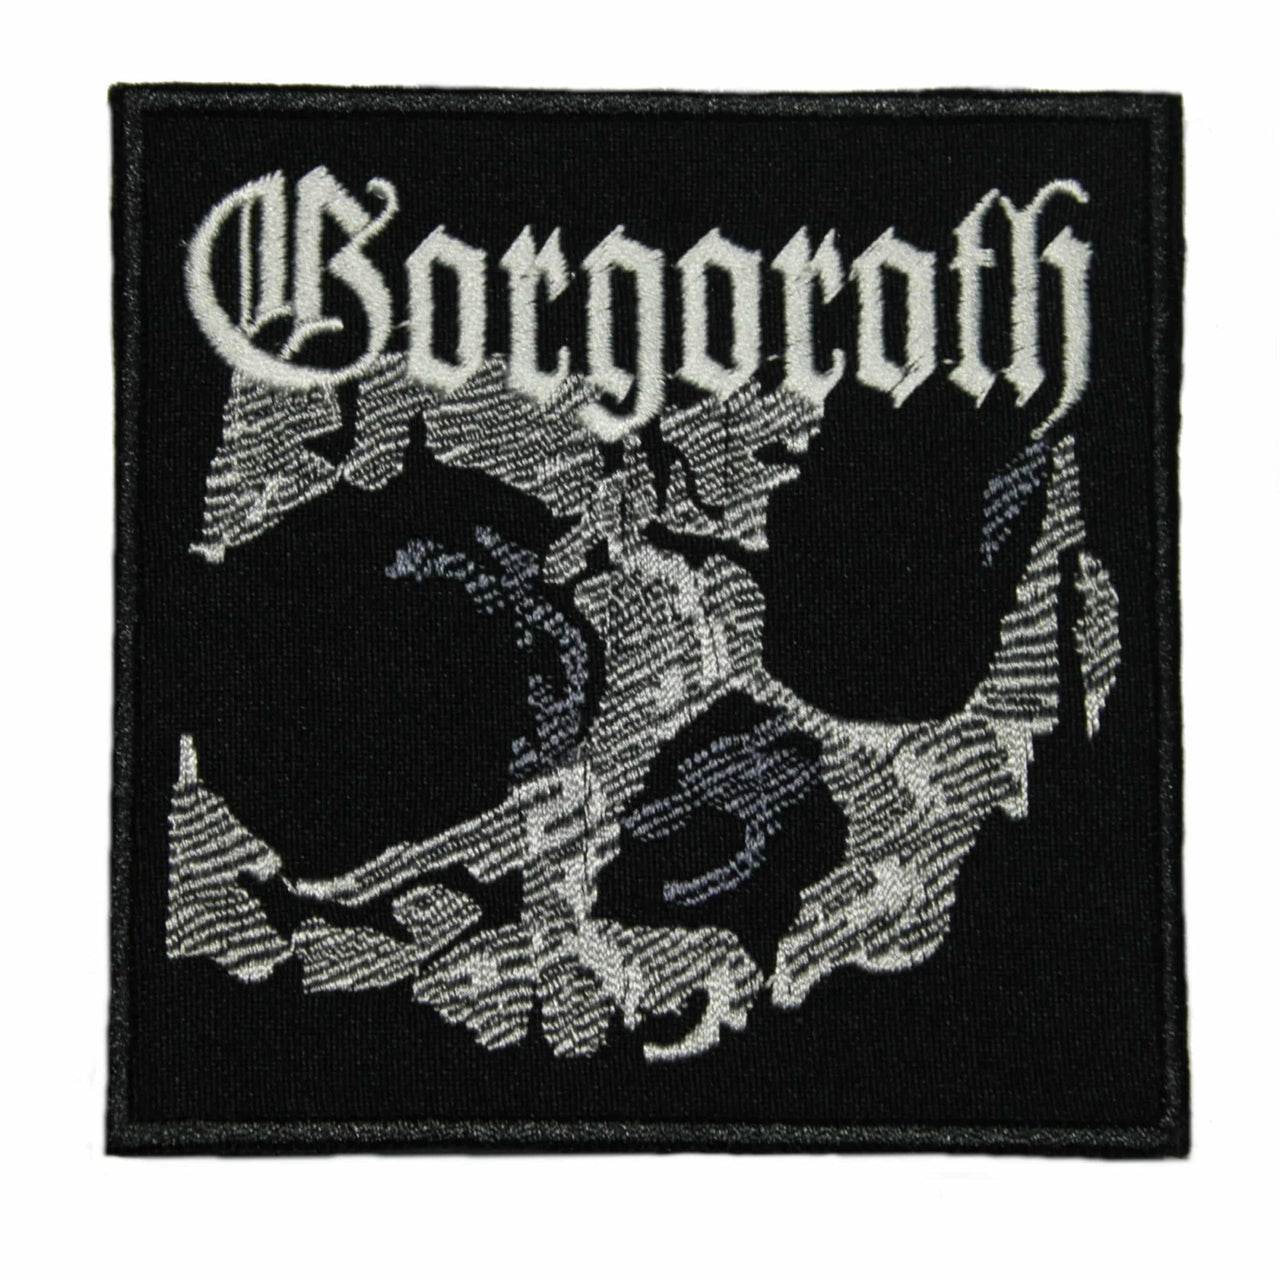 Gorgoroth Quantos Possunt ad Satanitatem Trahunt Patch